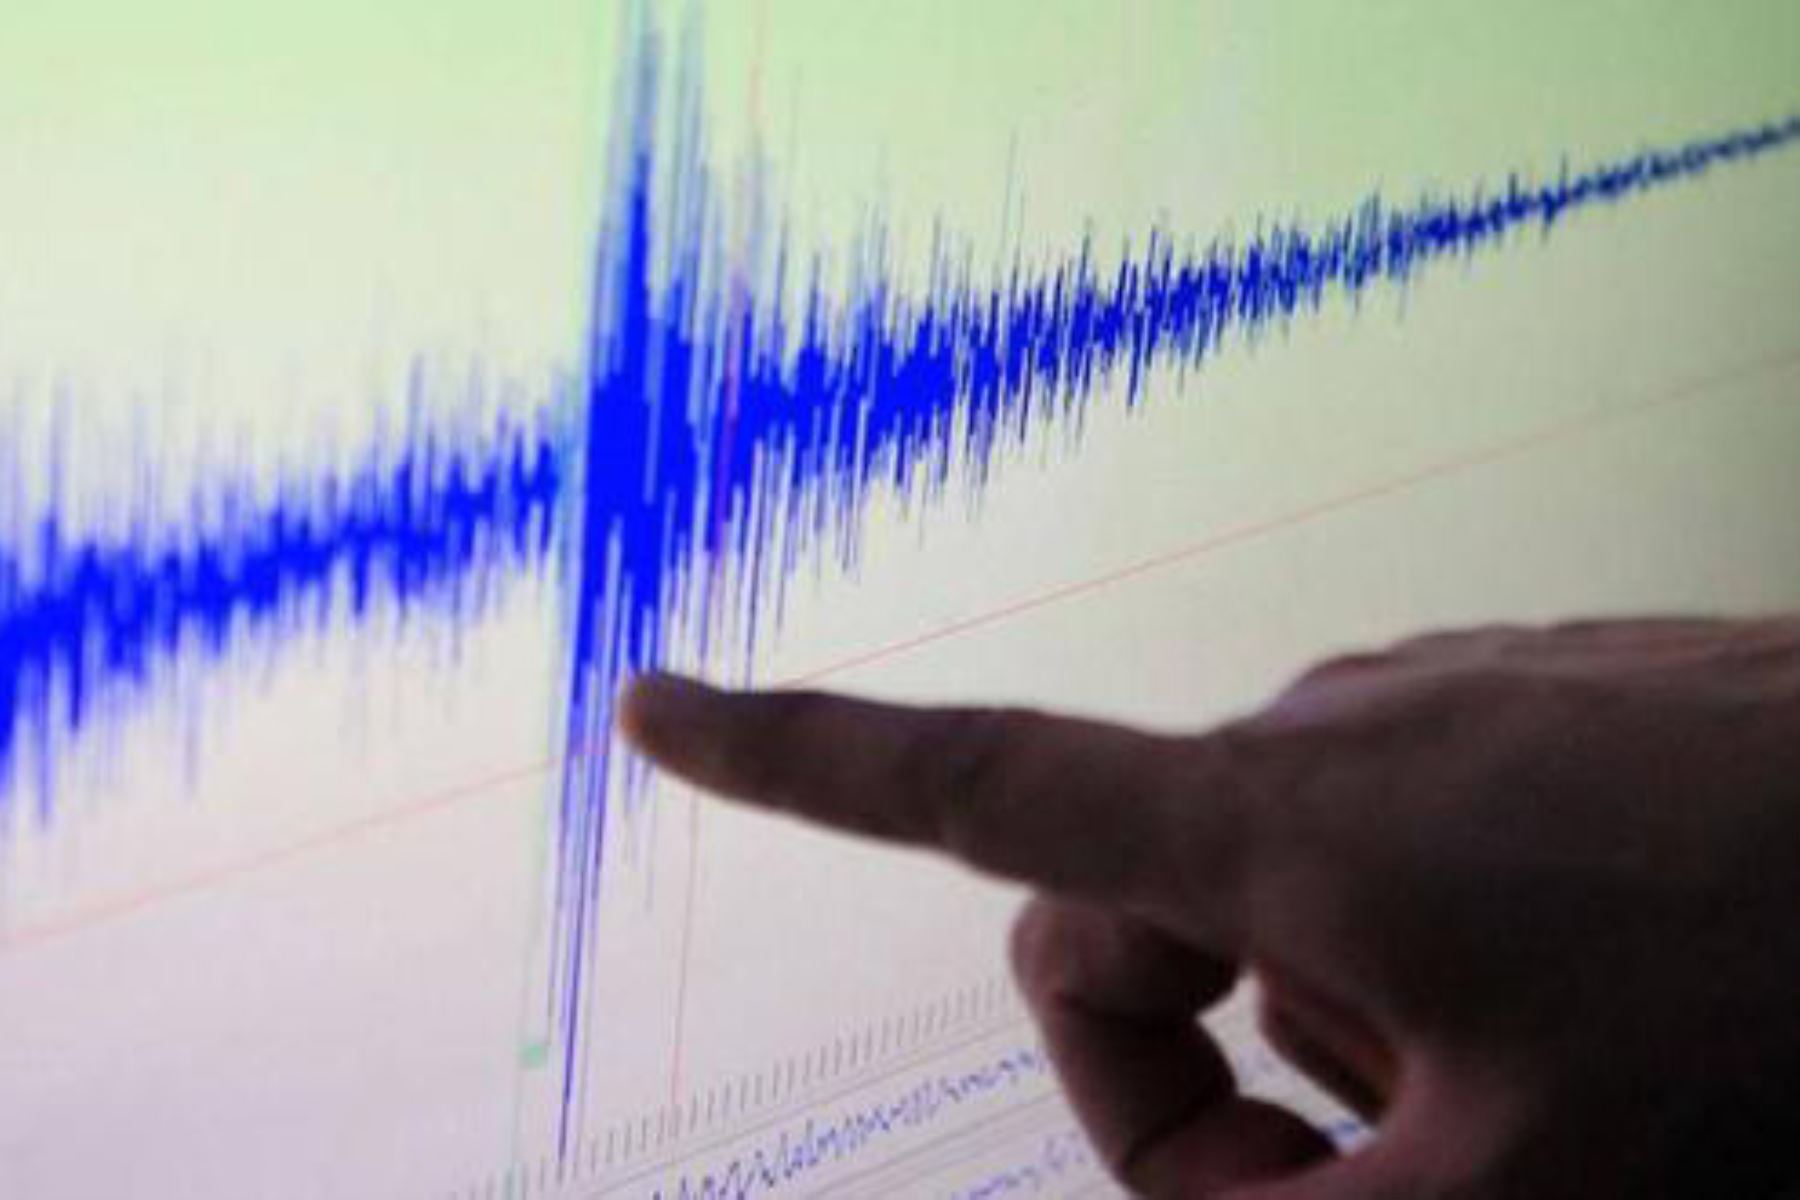 Hasta el momento no se han reportado daños personales ni materiales por el temblor de magnitud 4.5 en Huarmey. Foto: ANDINA/Difusión